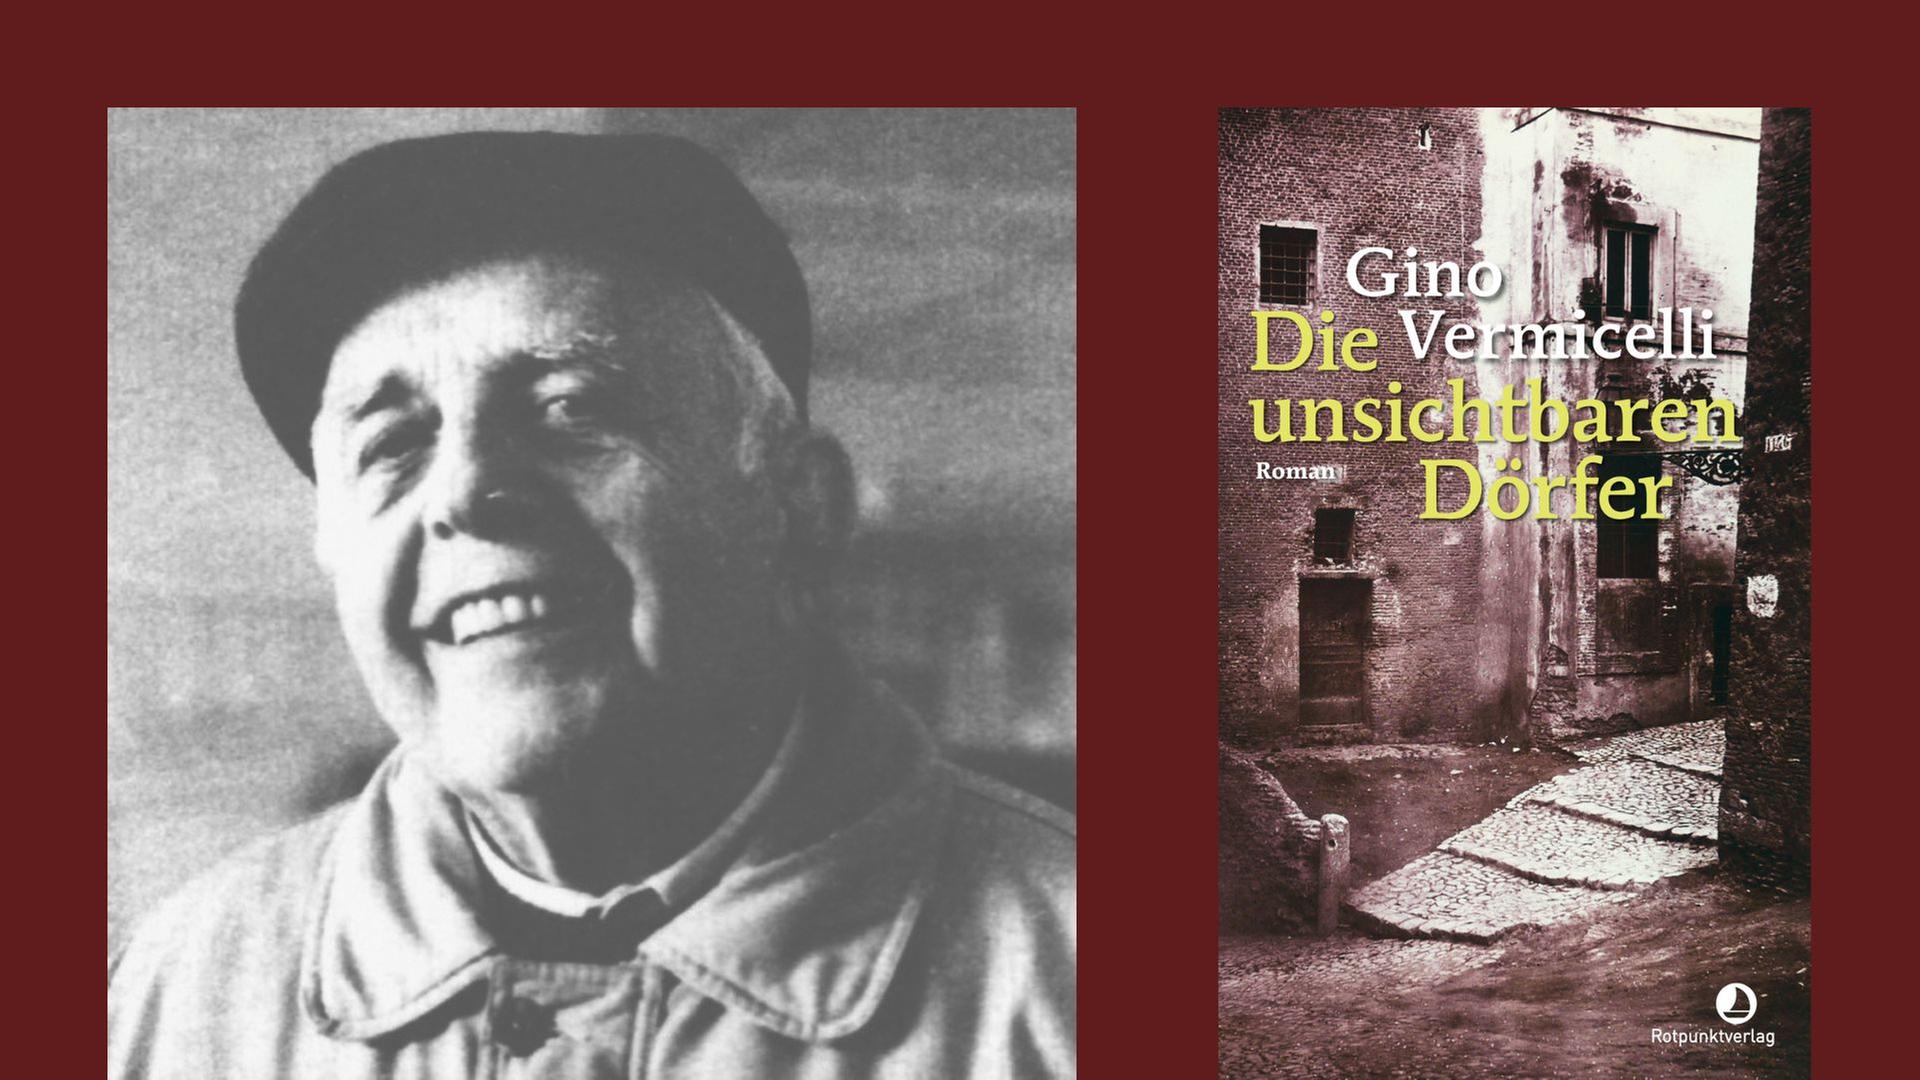 Gino Vermicelli: "Die unsichtbaren Dörfer"
Zu sehen sind der Autor und das Buchcover